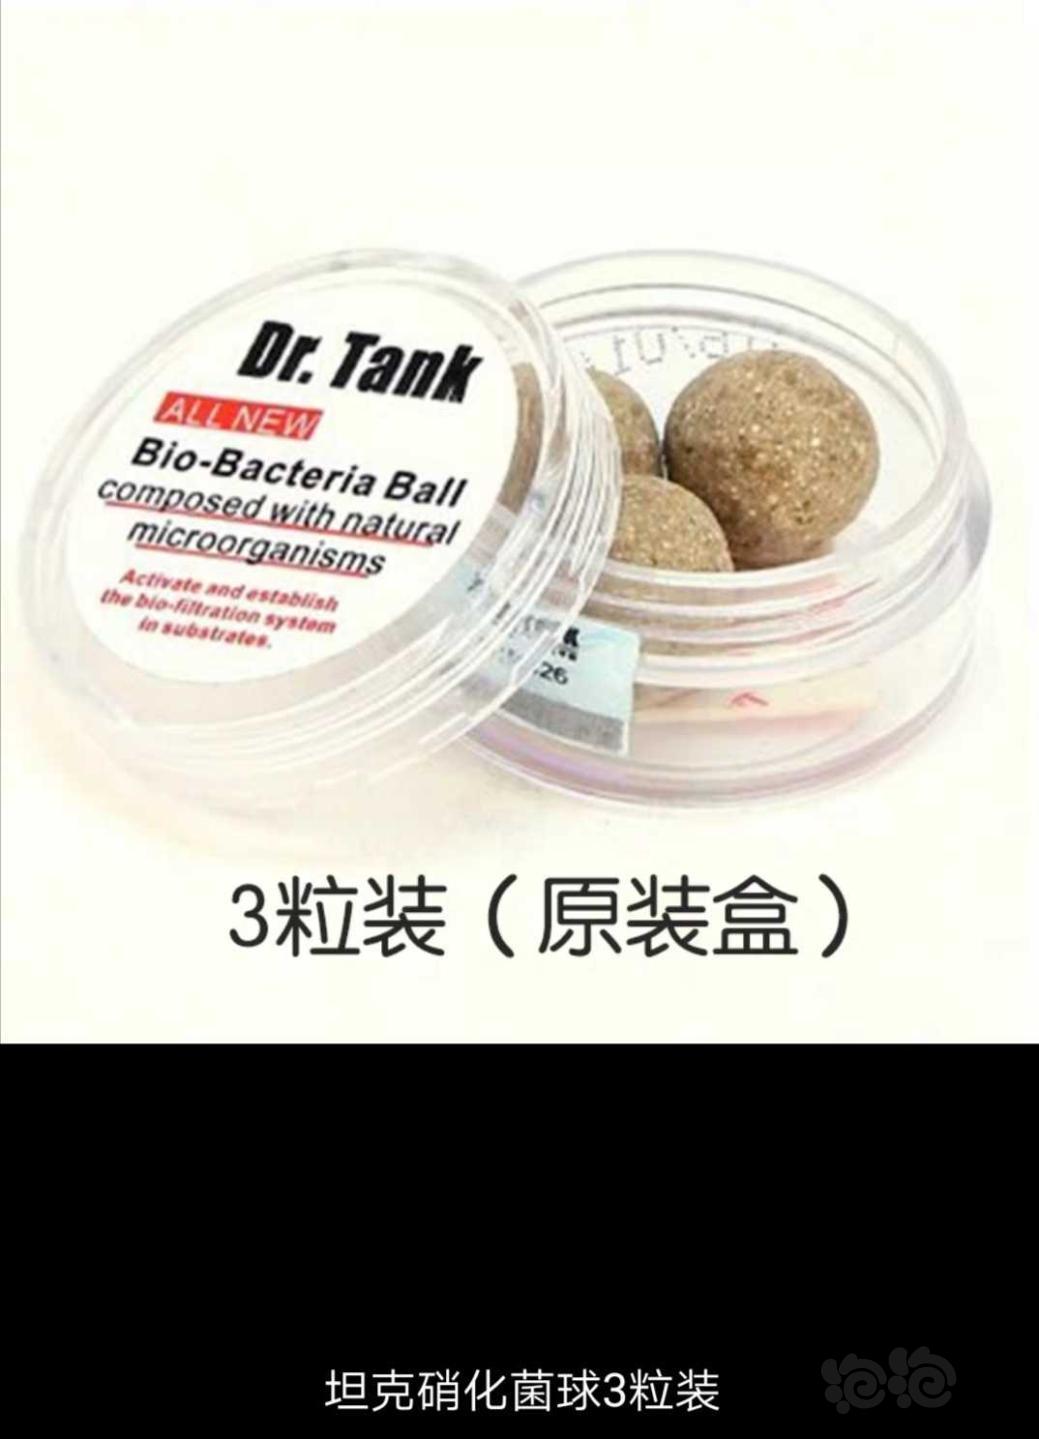 【用品】2019-11-01#RMB拍卖坦克二代硝化细菌球三粒装*3盒-图1